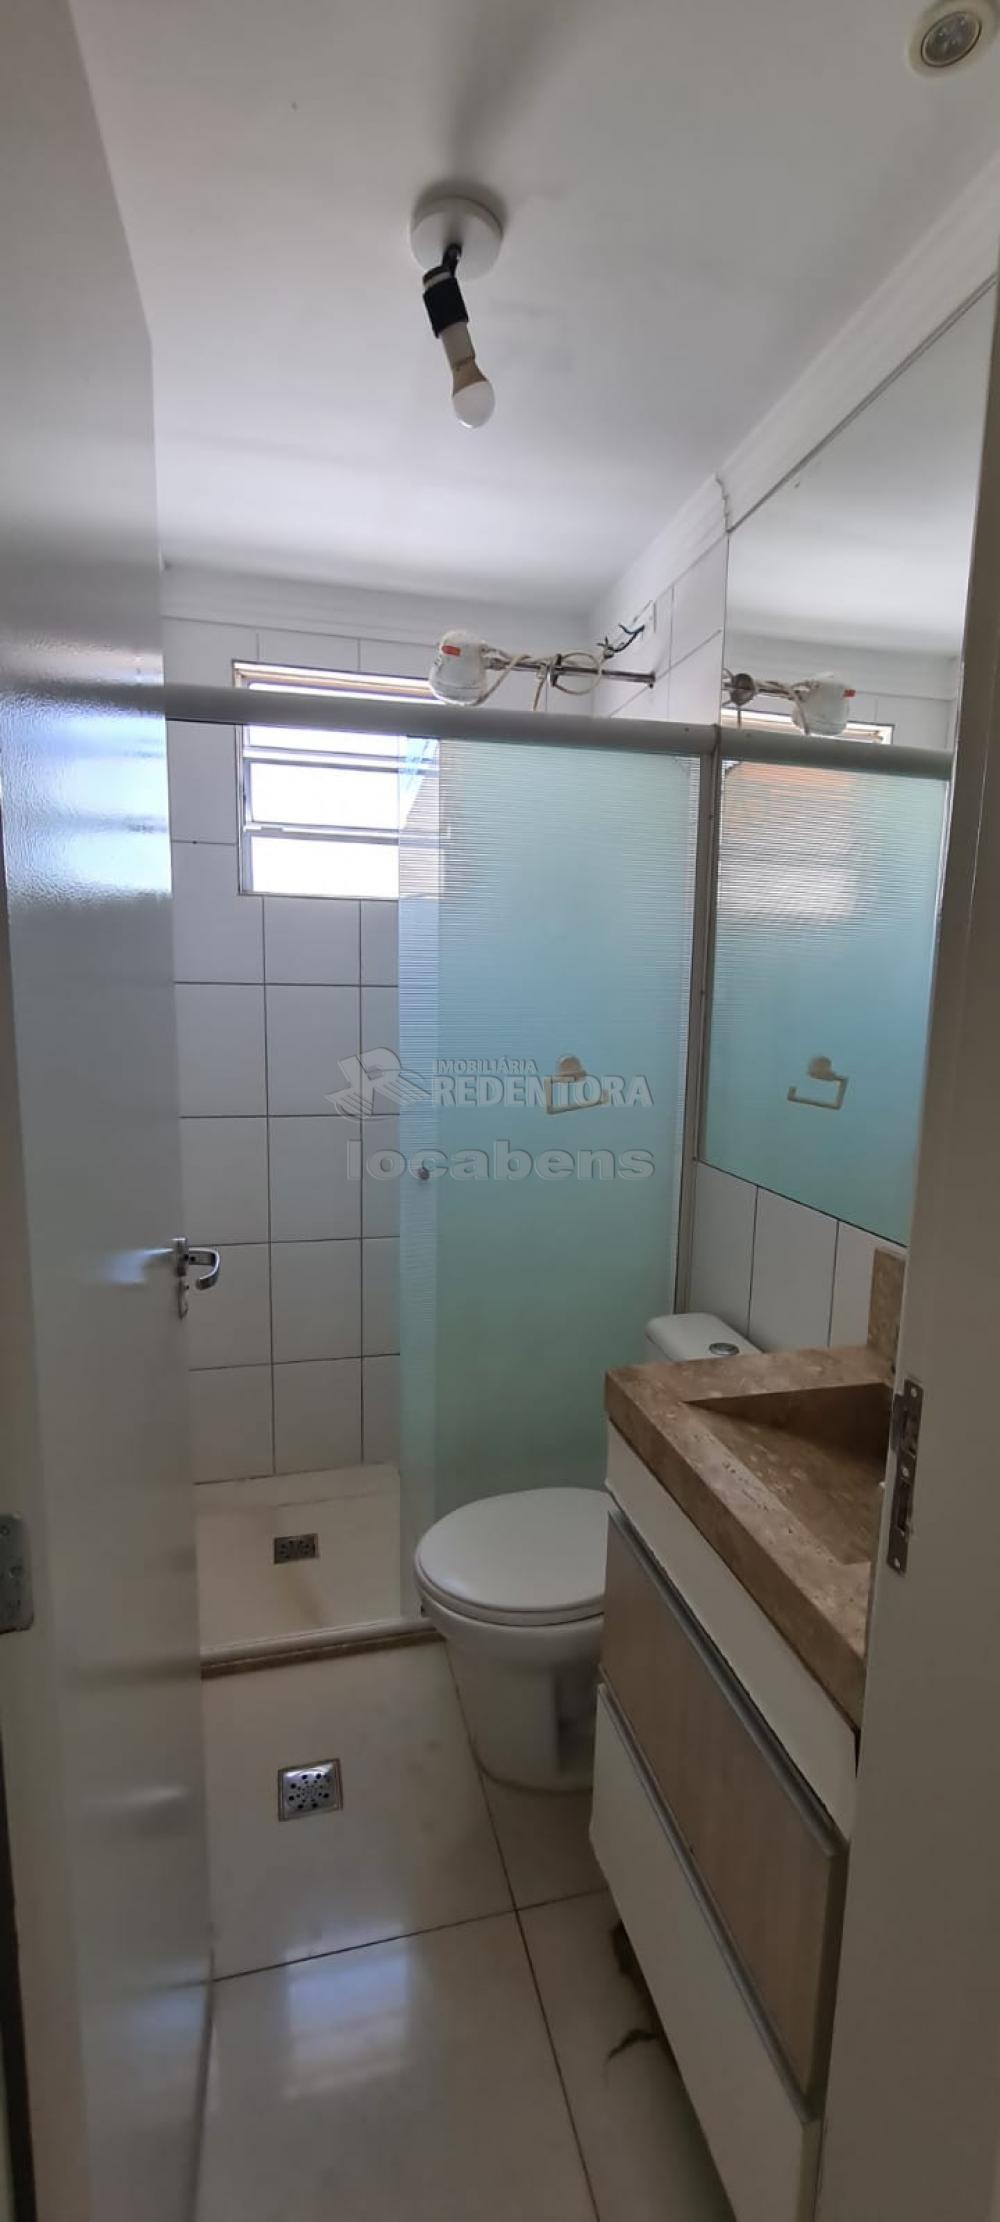 Alugar Apartamento / Padrão em São José do Rio Preto R$ 800,00 - Foto 7